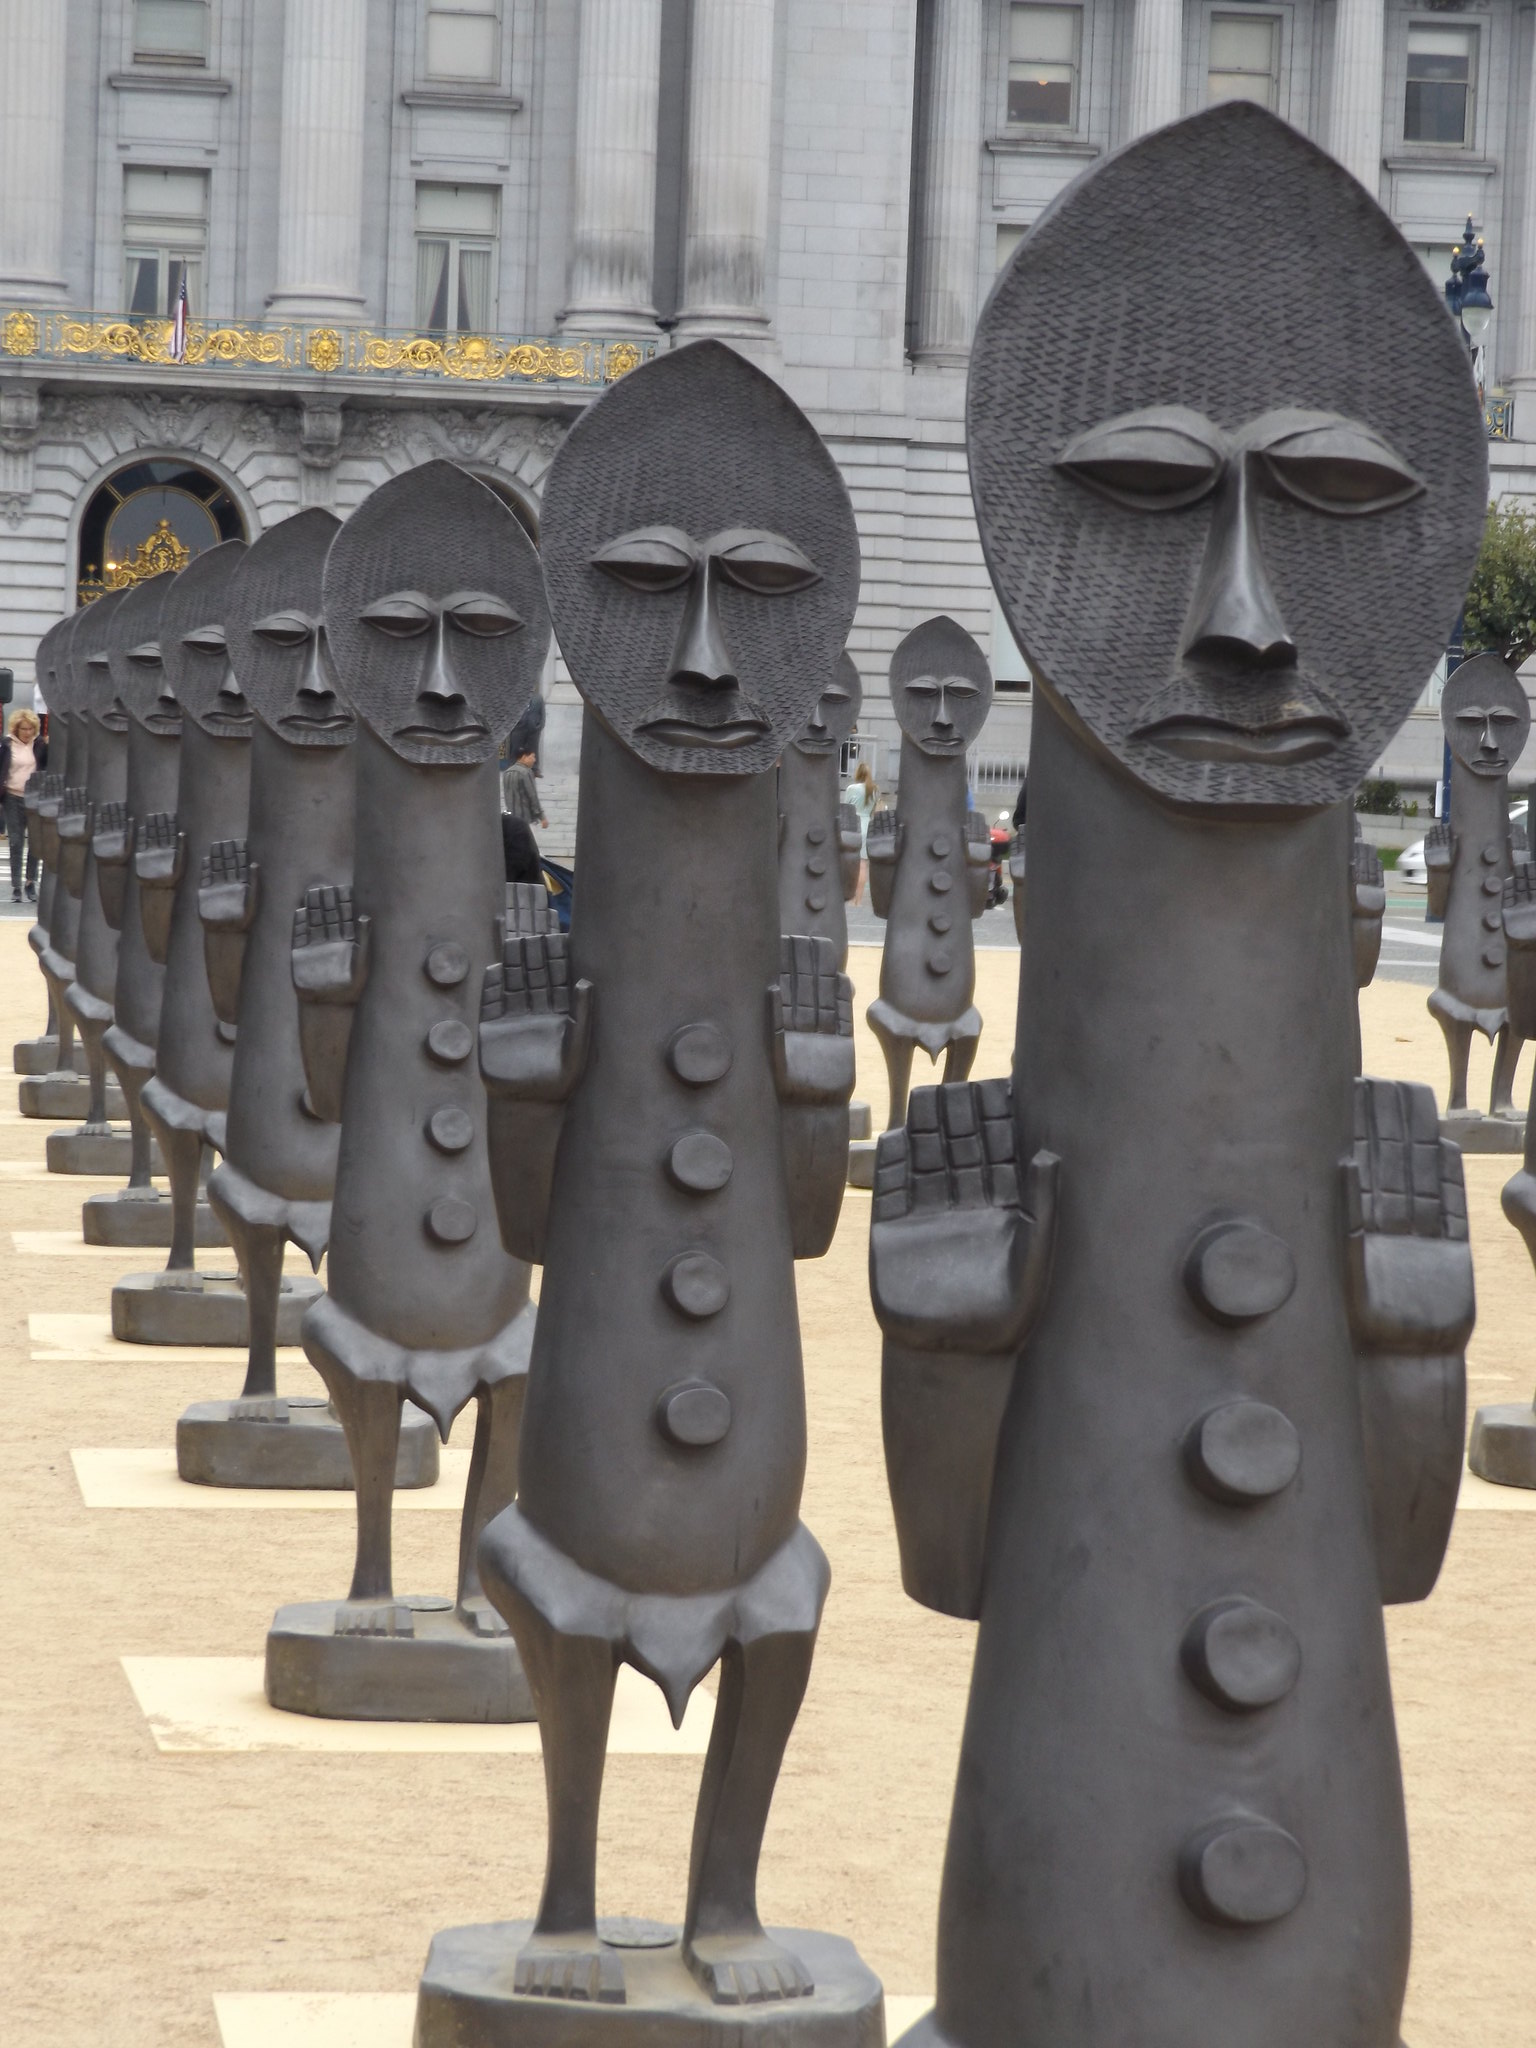 Sculptures in Civic Center Plaza, San Francisco, California, USA, 6 September 2018